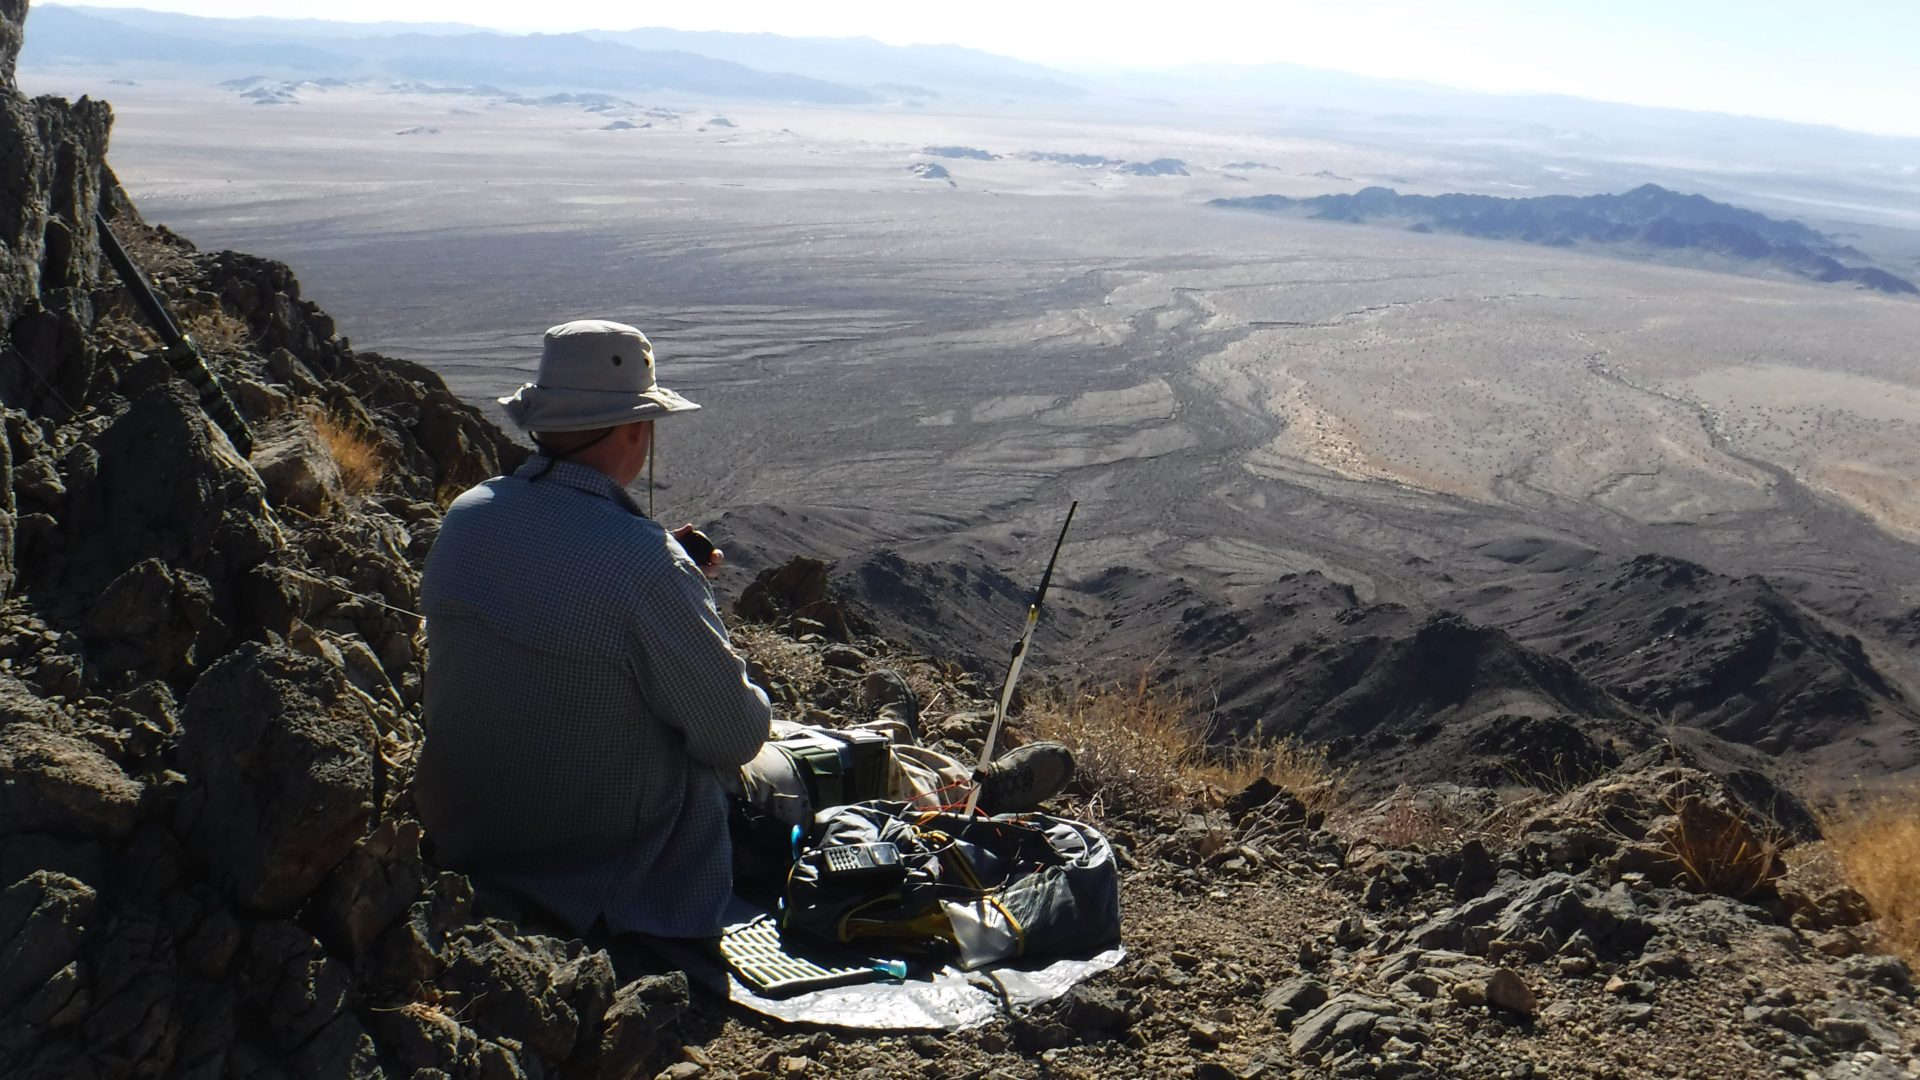 Ham radio operator portable for SOTA in the desert